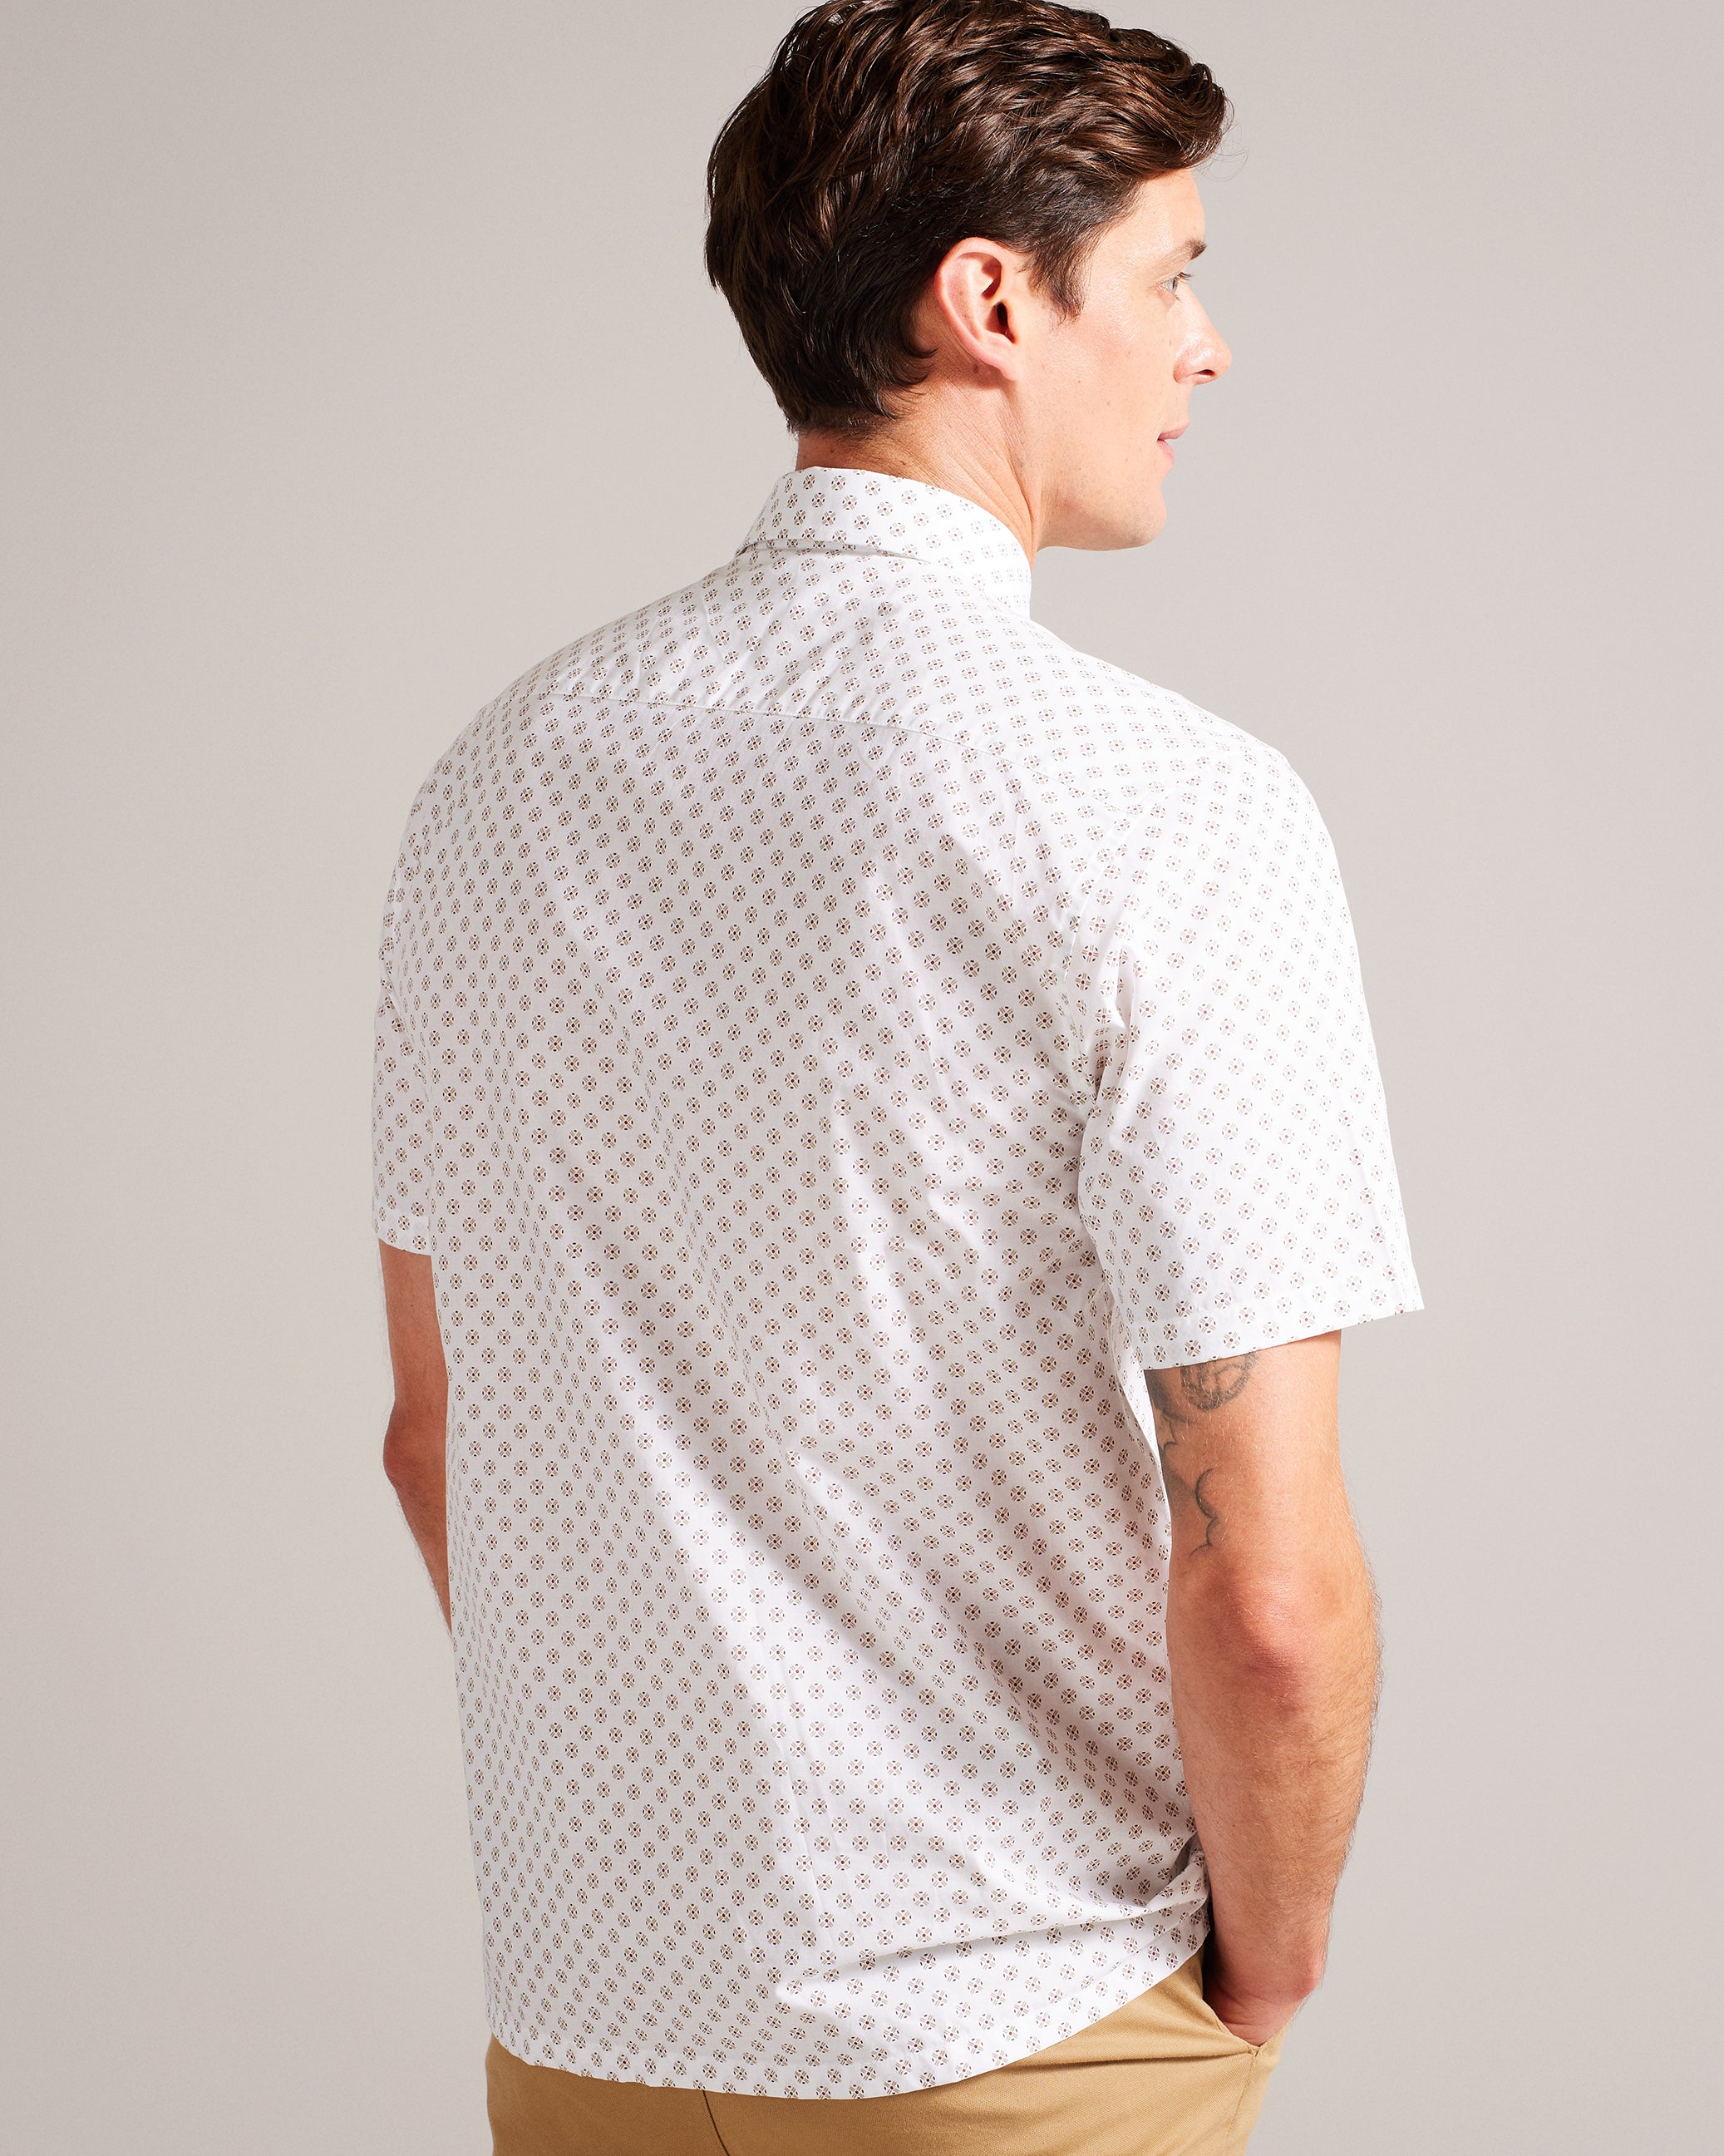 Forter Short Sleeve Geometric Print Shirt White